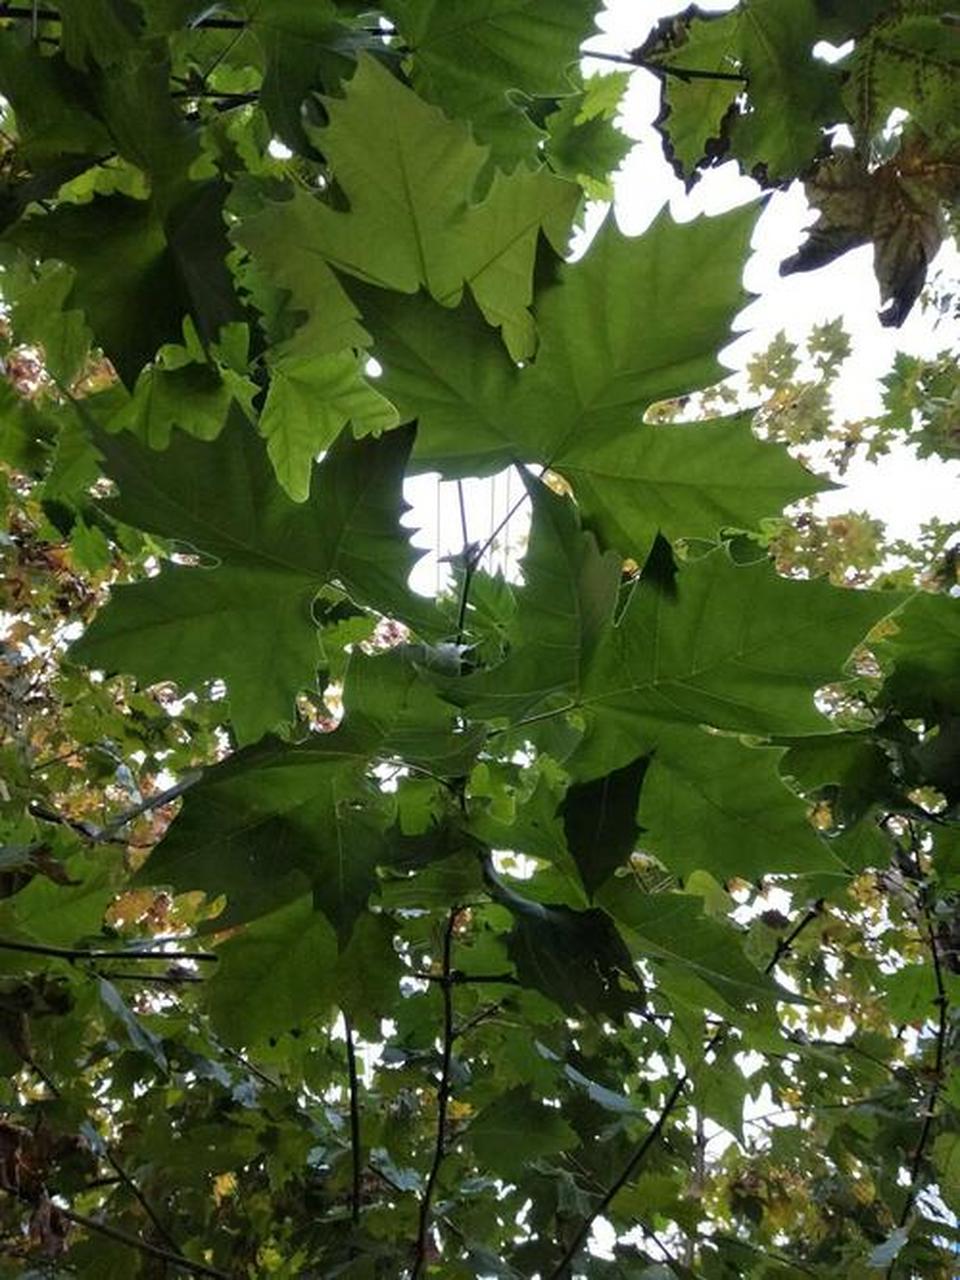 这是小城郎当河边的法国梧桐树  这种树的叶子很有特色